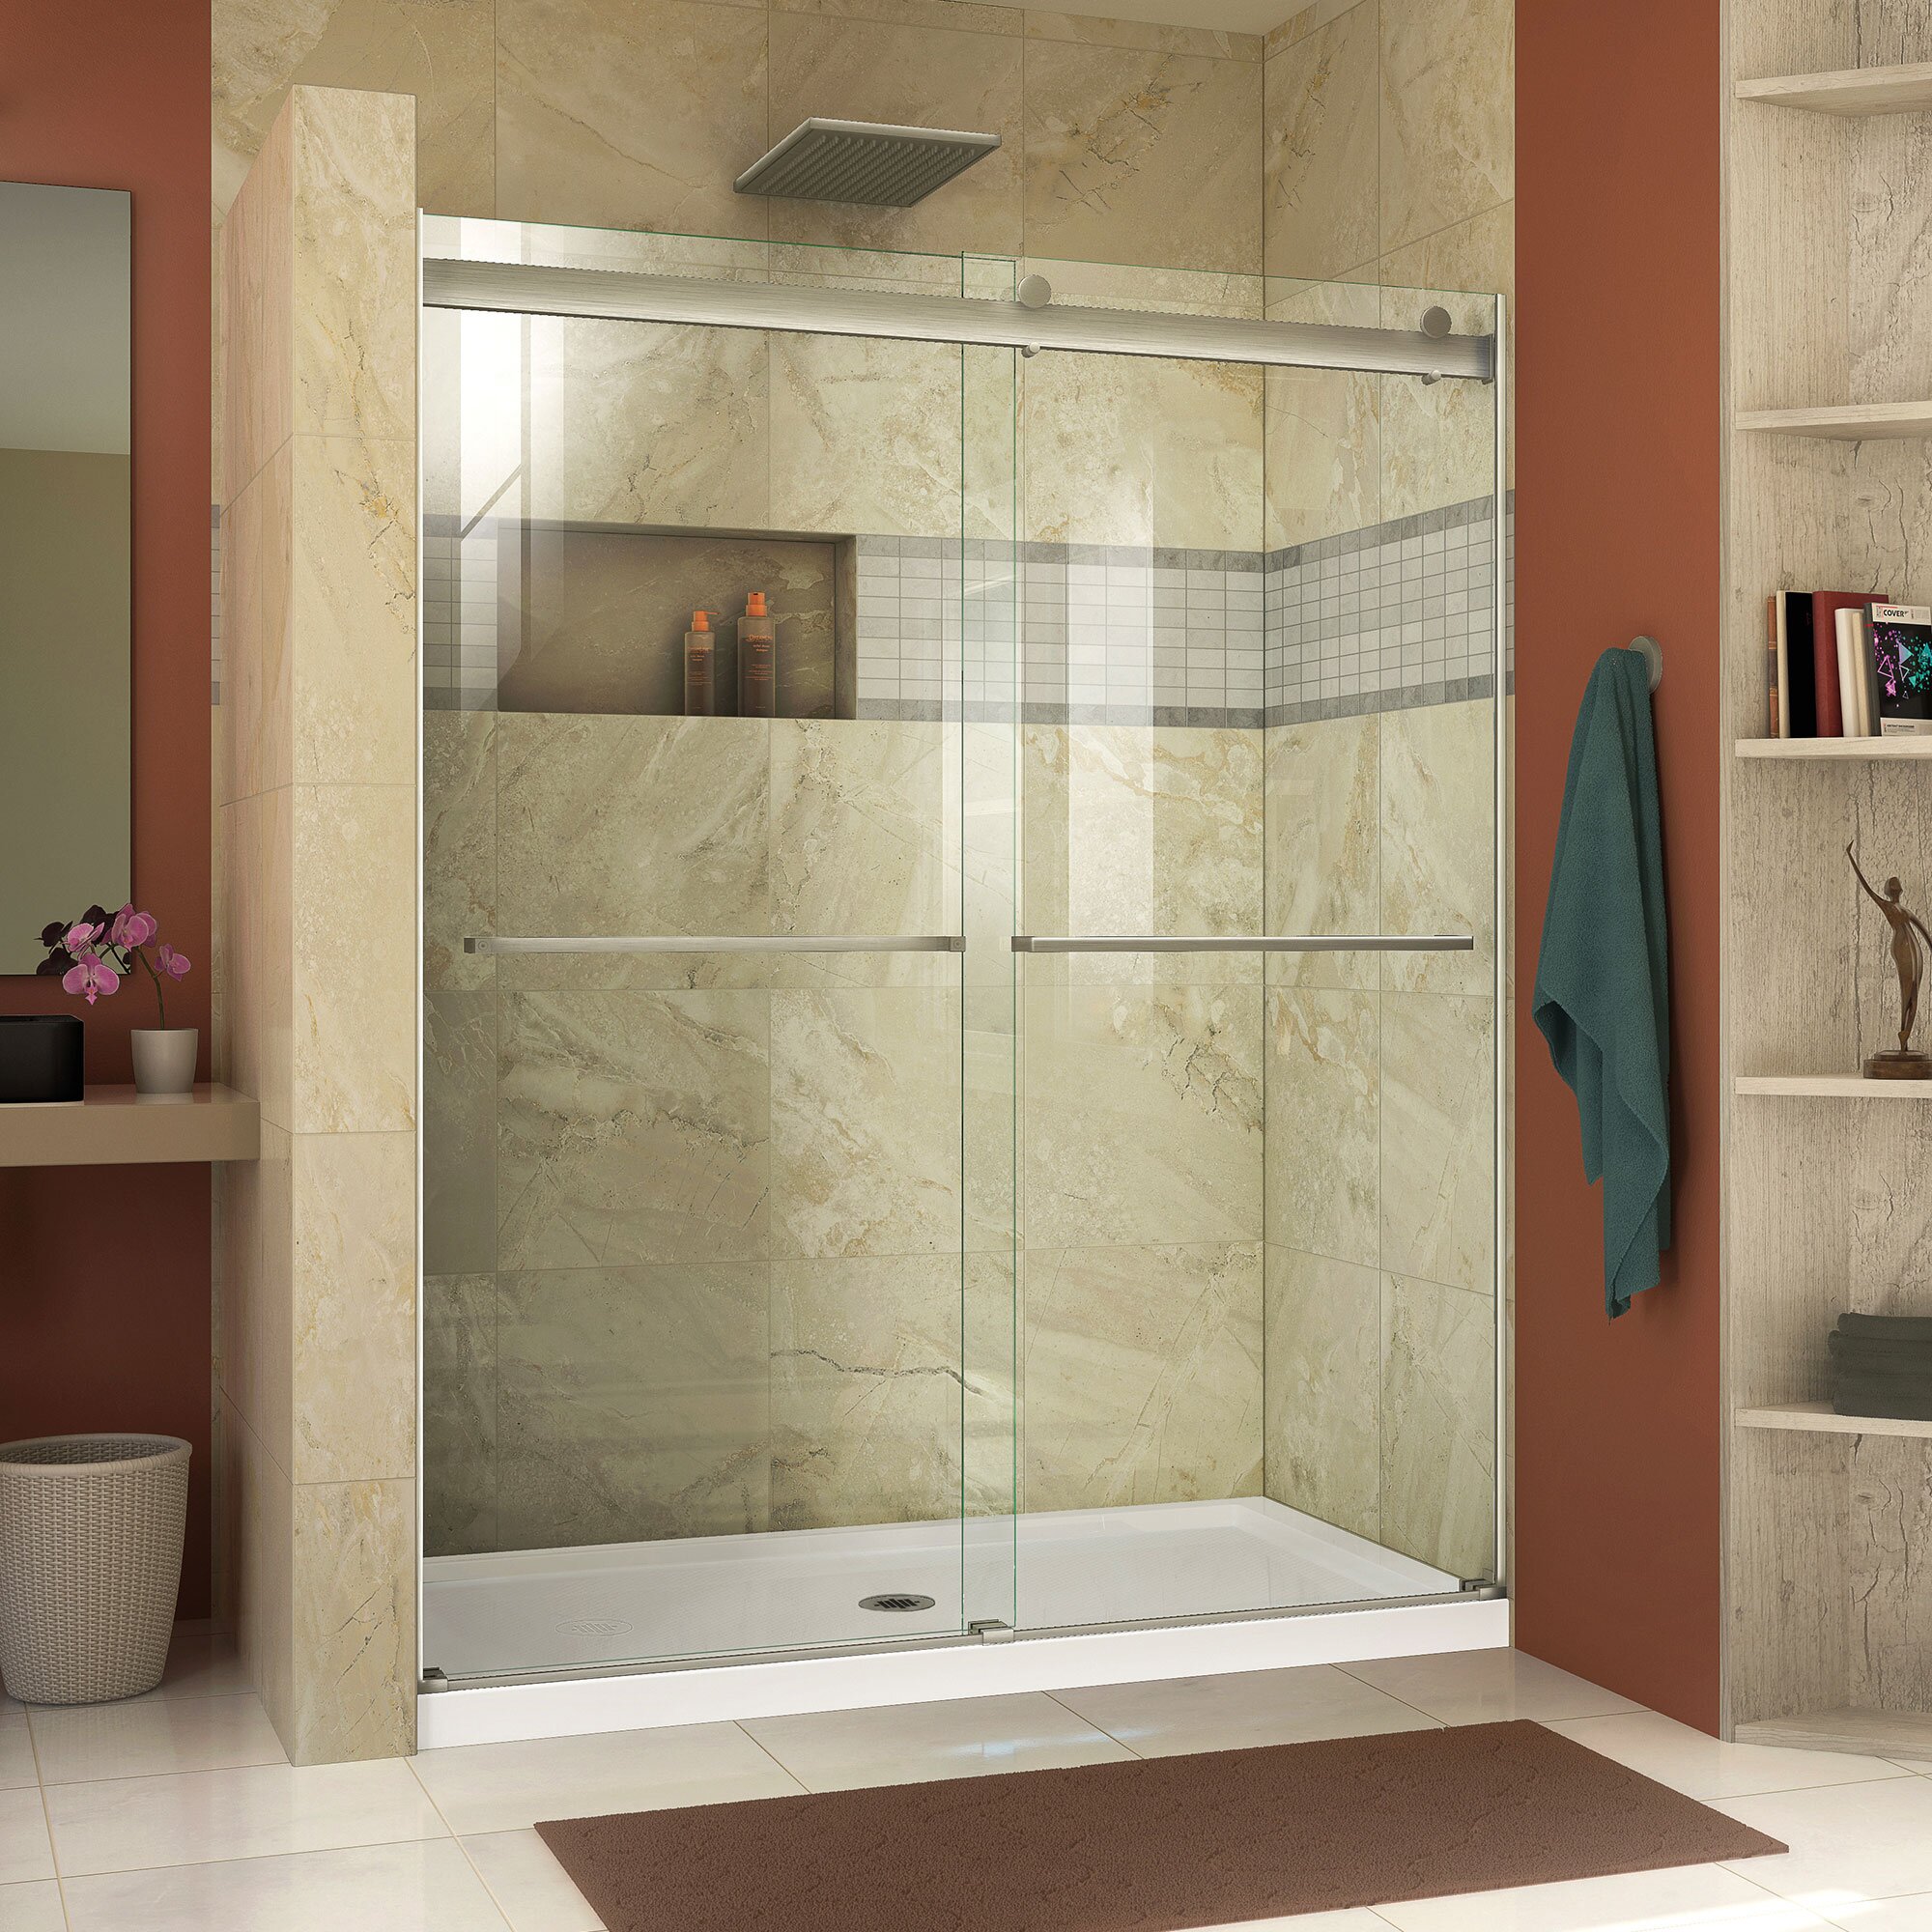 Зеркальный шкафчик для ванной комнаты - навесные и напольные